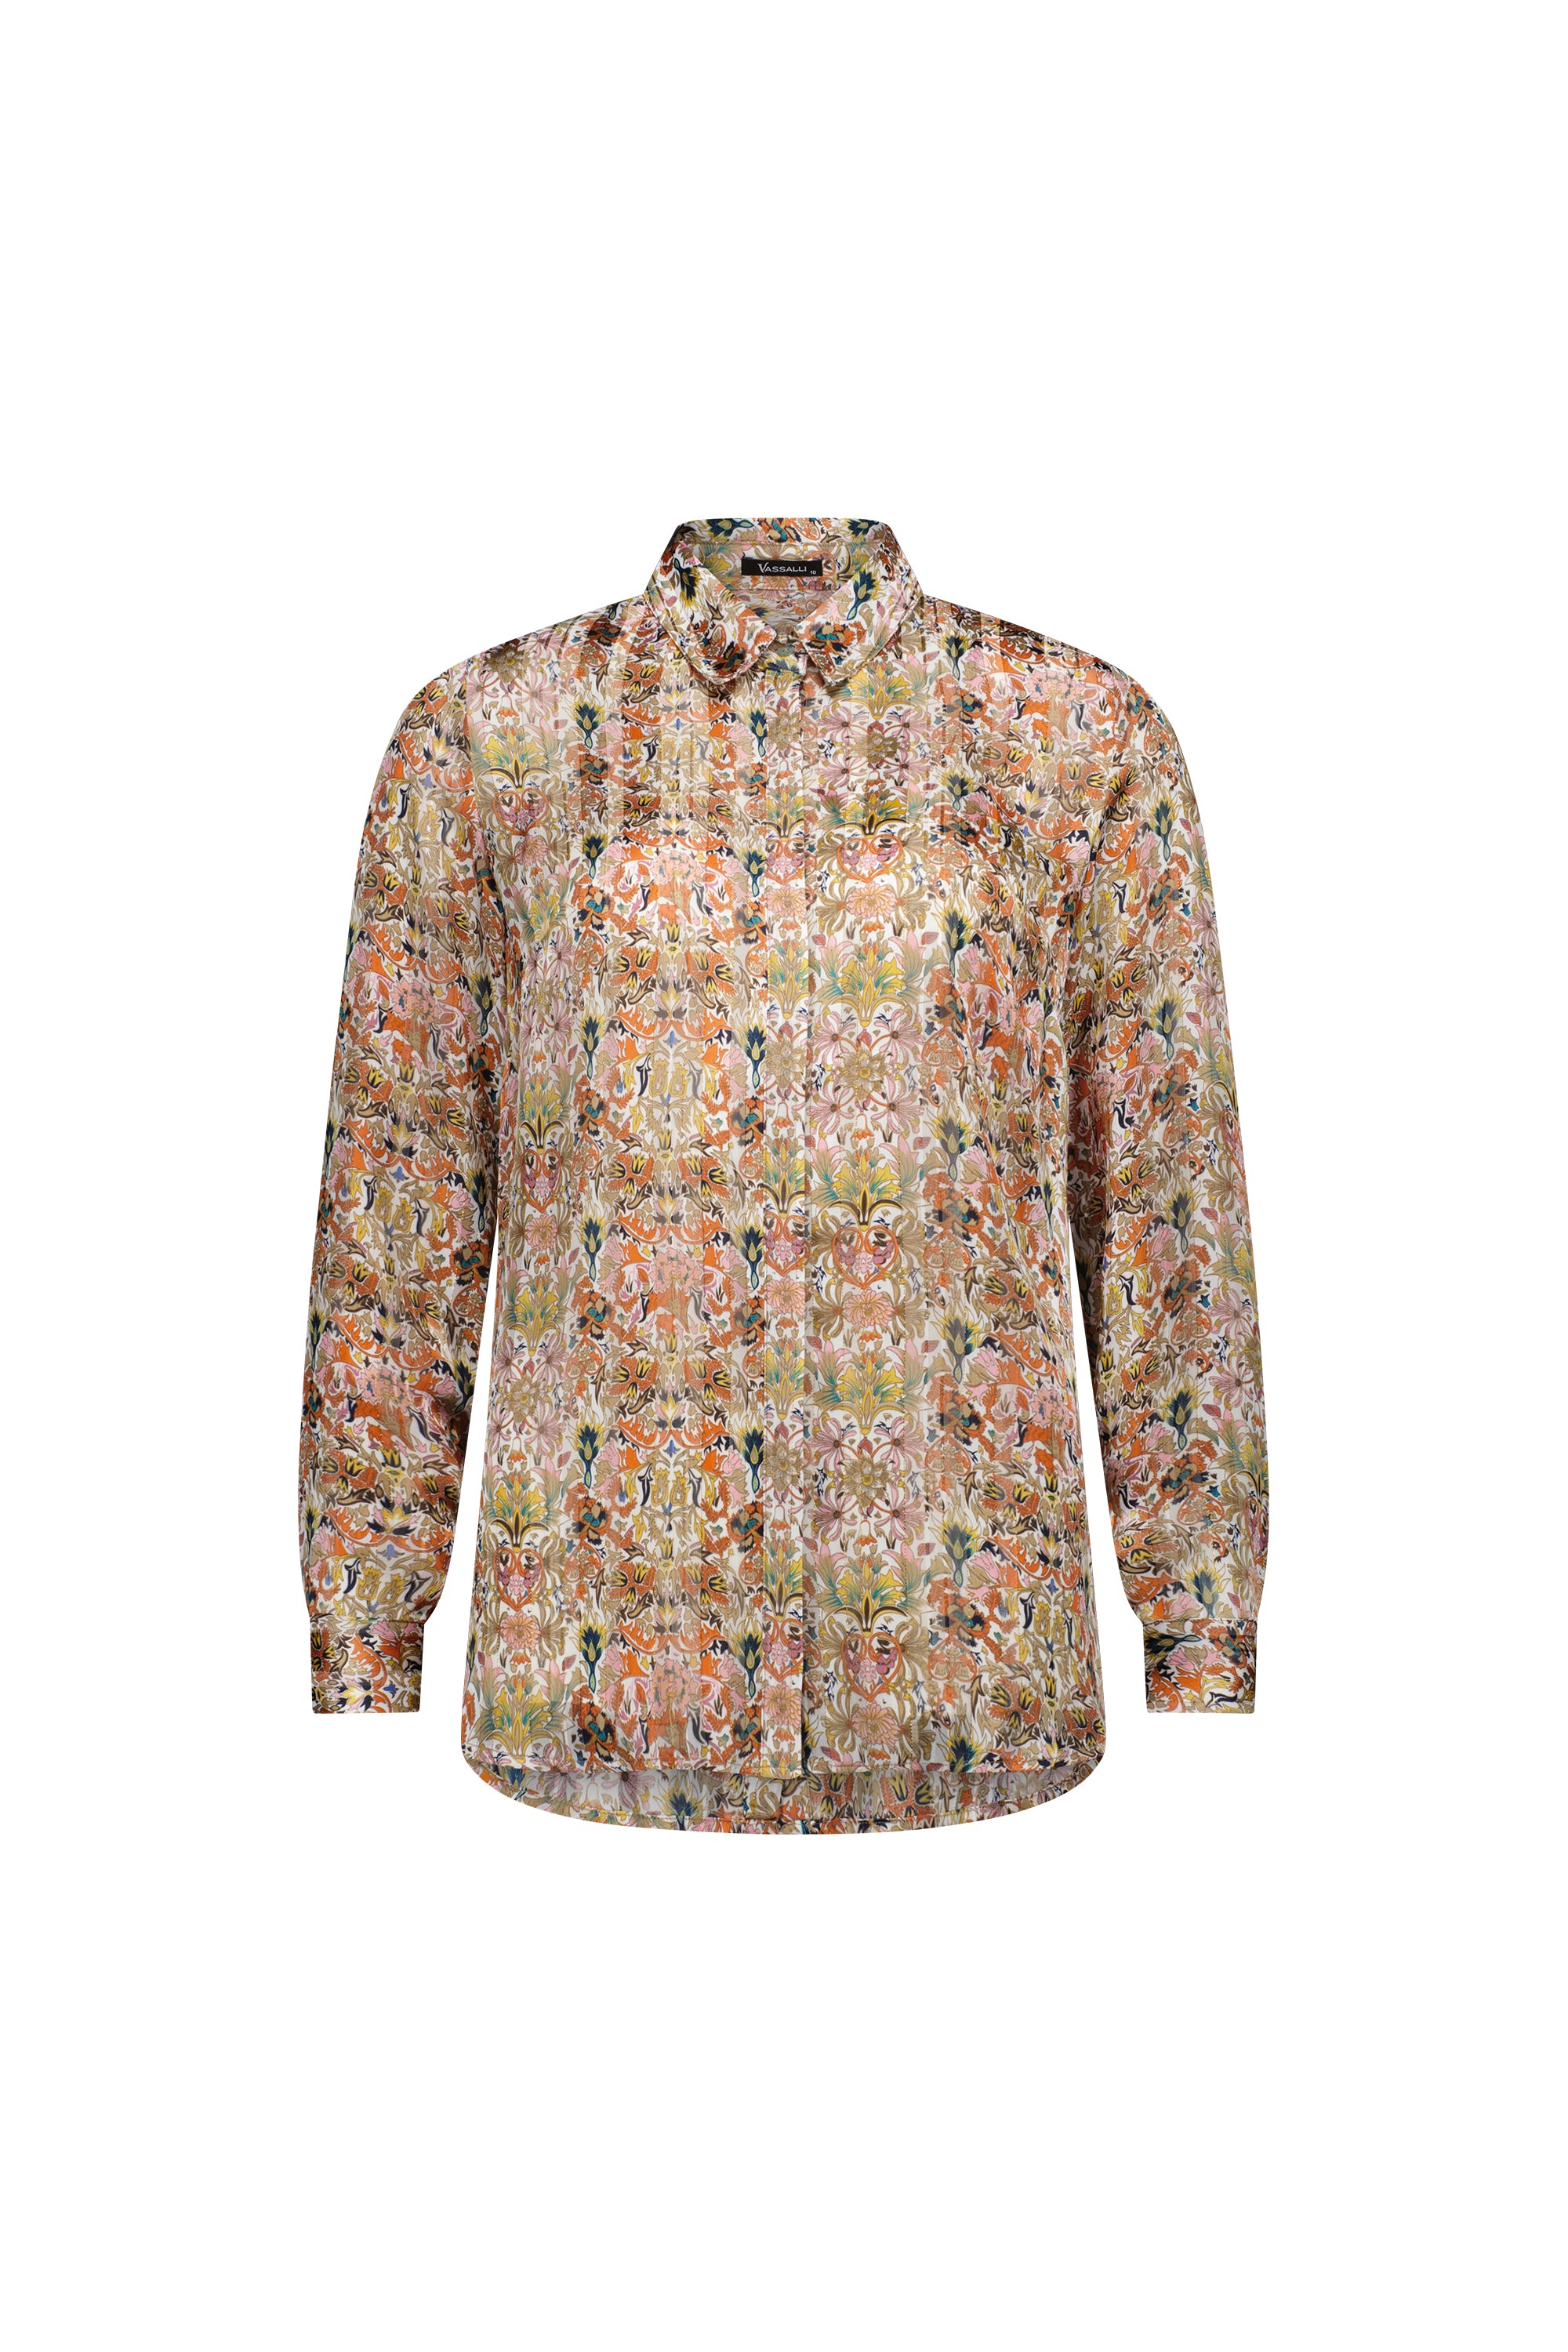 Vassalli Long Sleeve Shirt with Button Detail - Eden